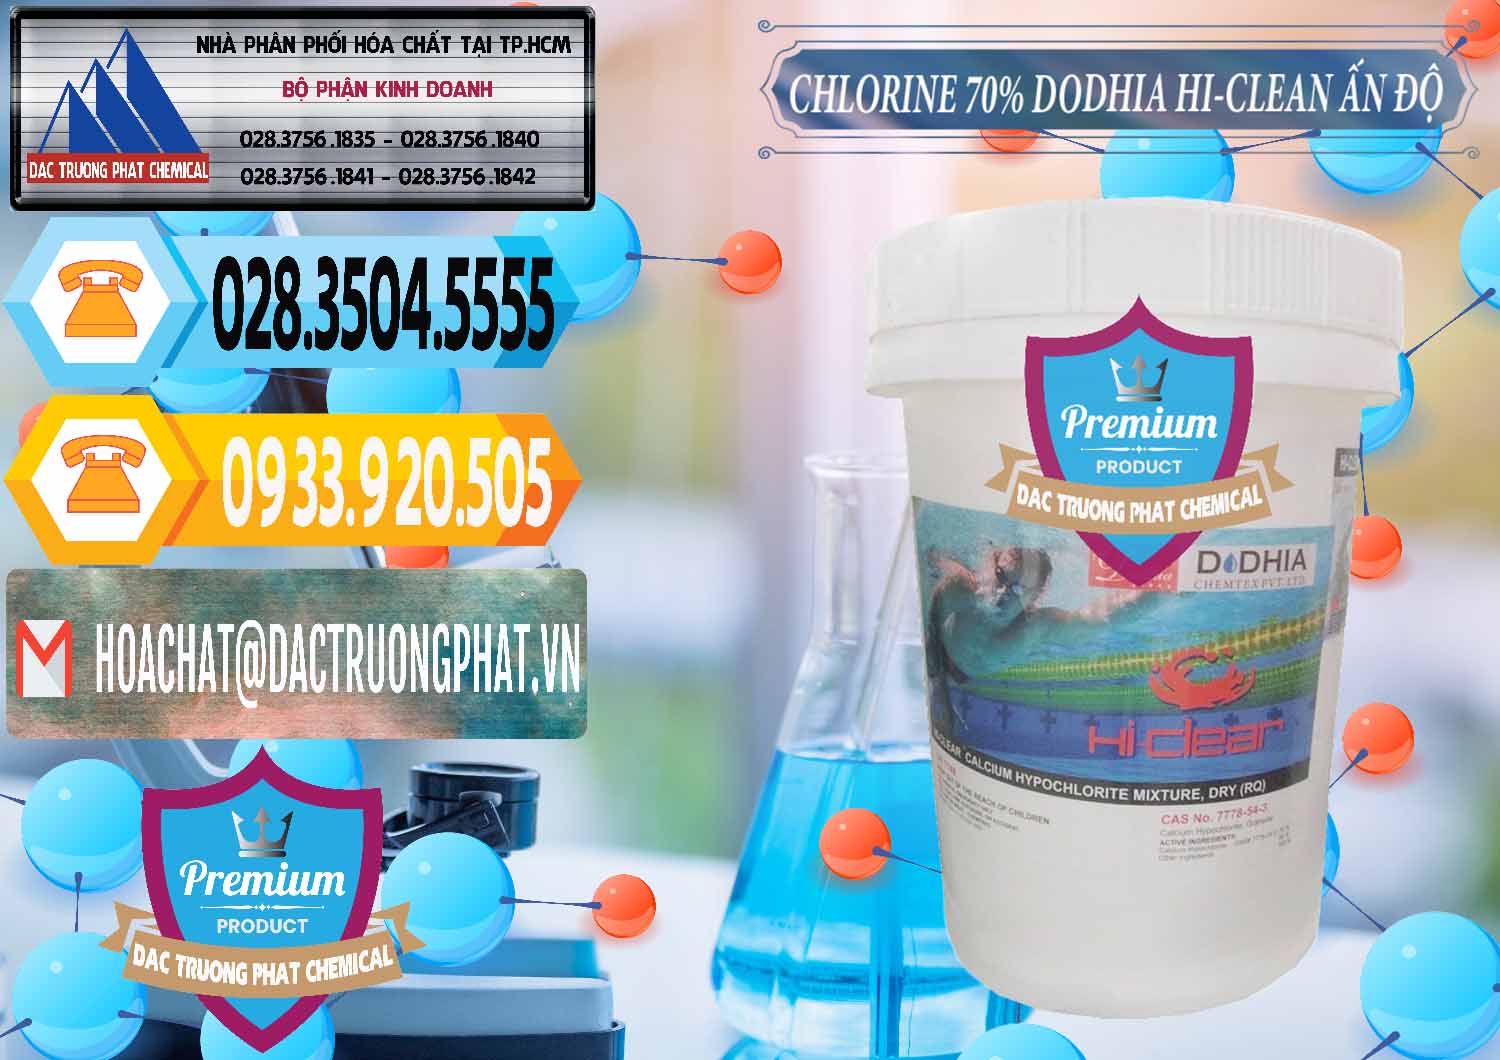 Chuyên bán & phân phối Chlorine – Clorin 70% Dodhia Hi-Clean Ấn Độ India - 0214 - Công ty bán _ cung cấp hóa chất tại TP.HCM - hoachattayrua.net